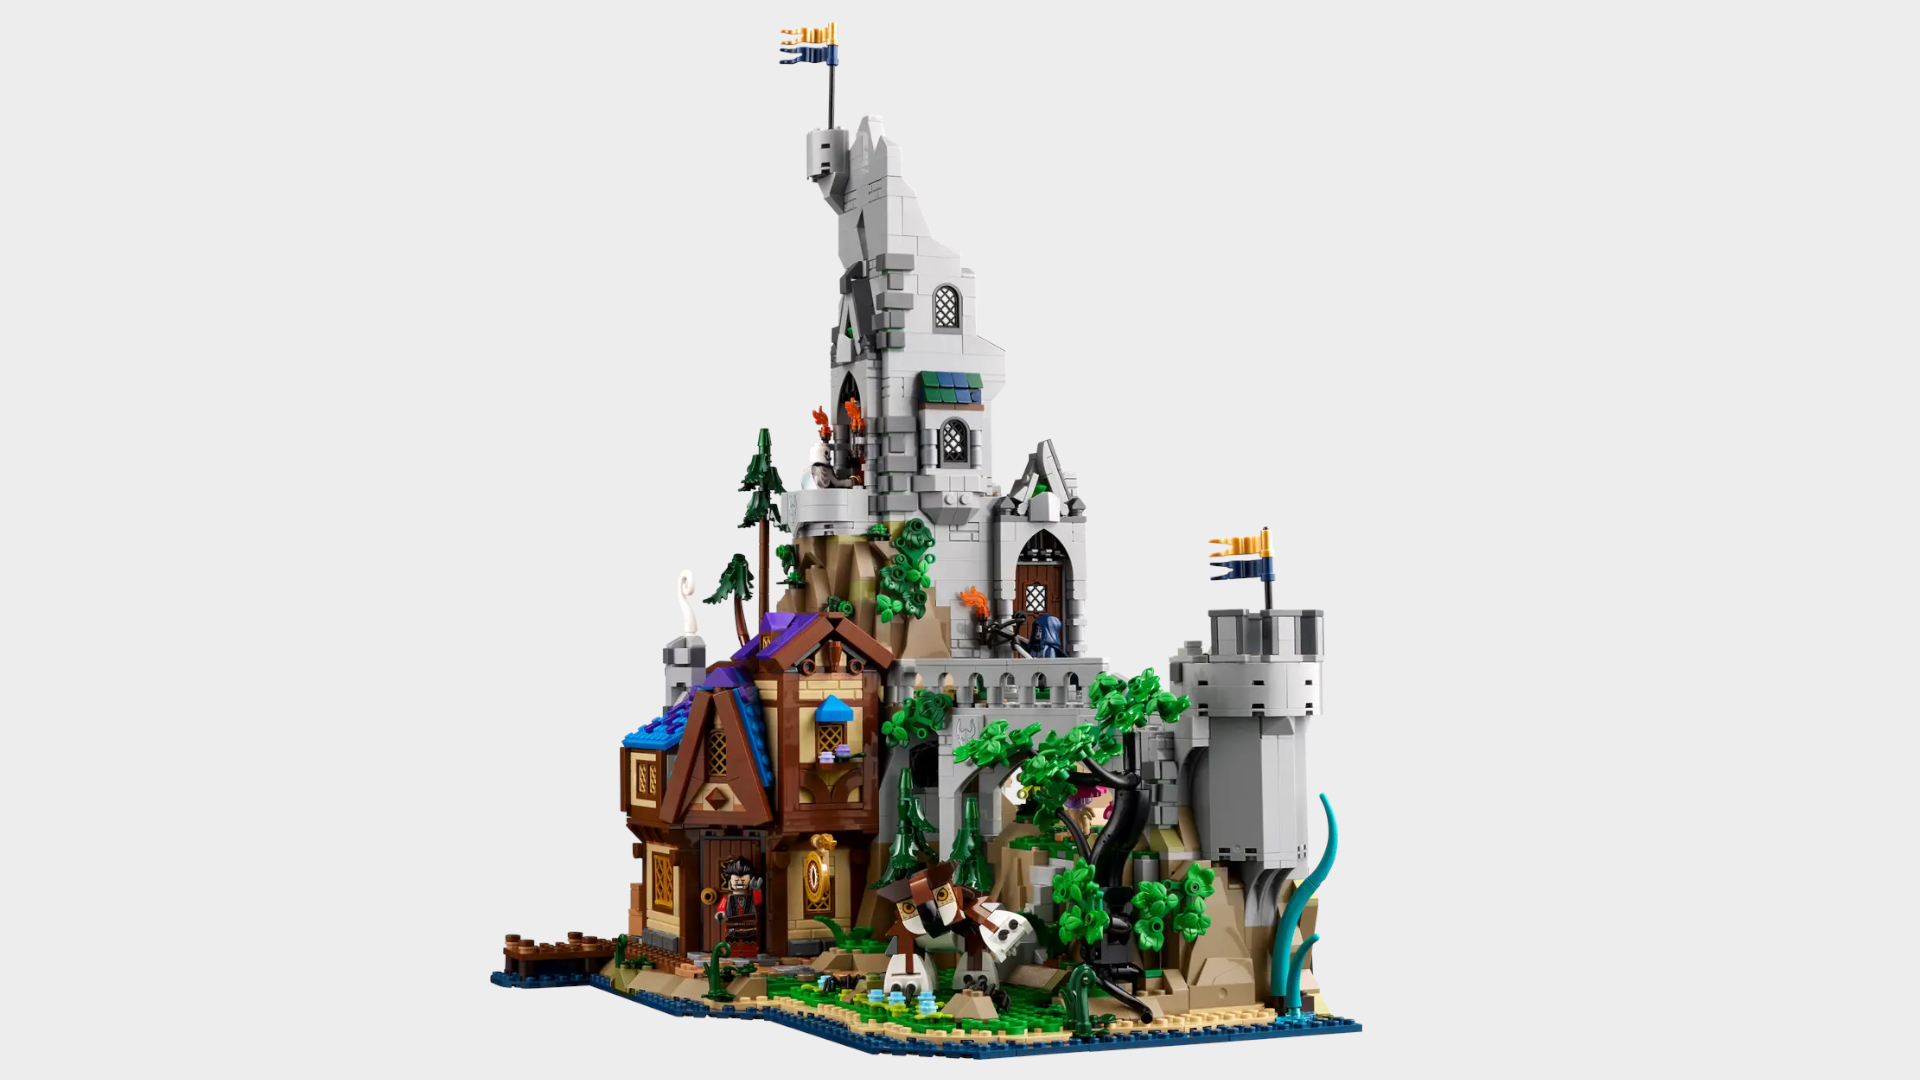 Lego D&D set against a plain background without dragon model